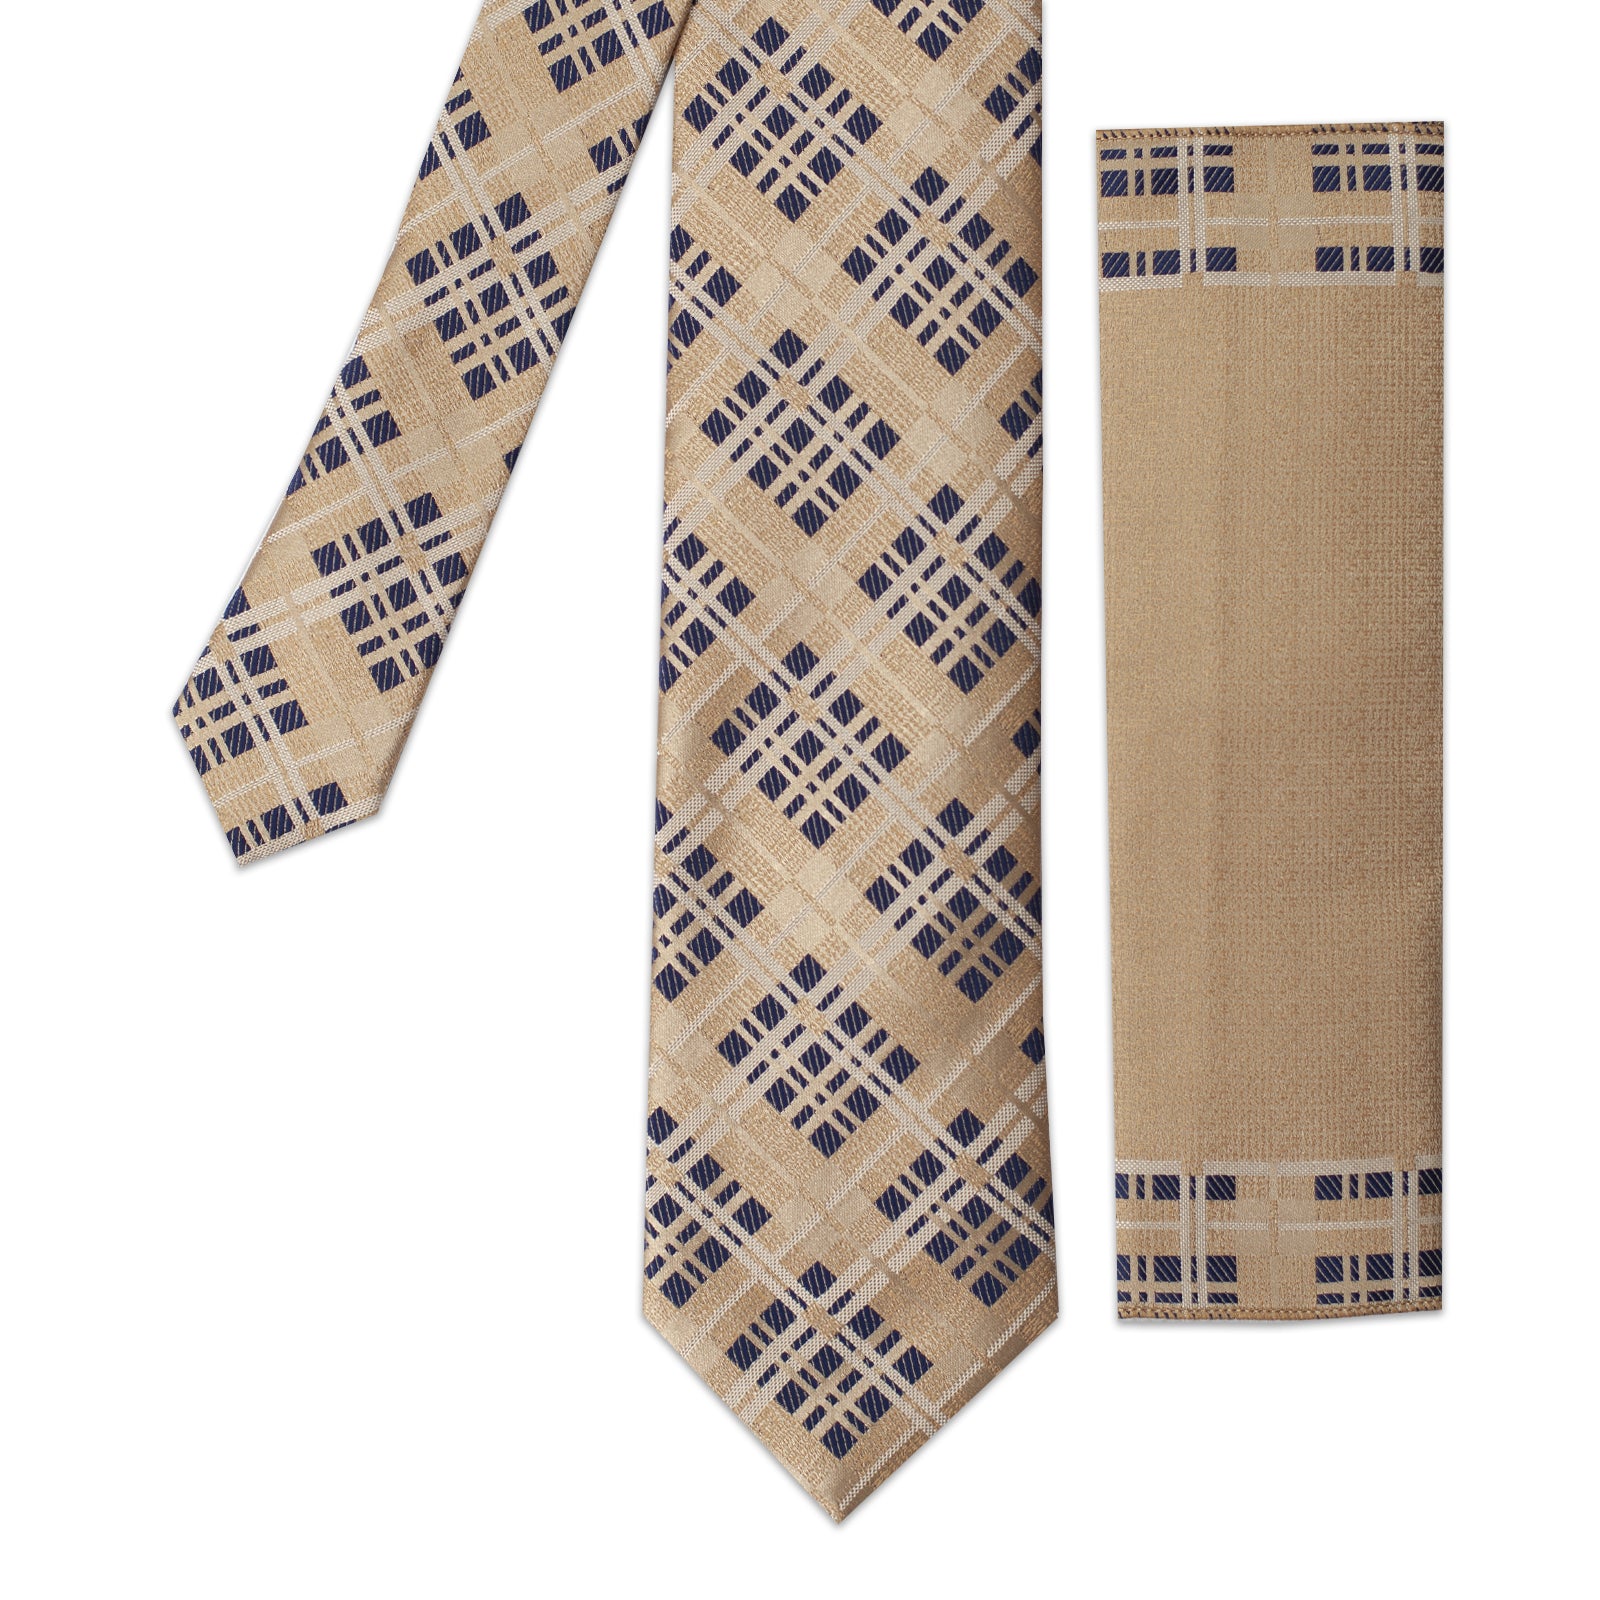 Cravate Homme + Mouchoir